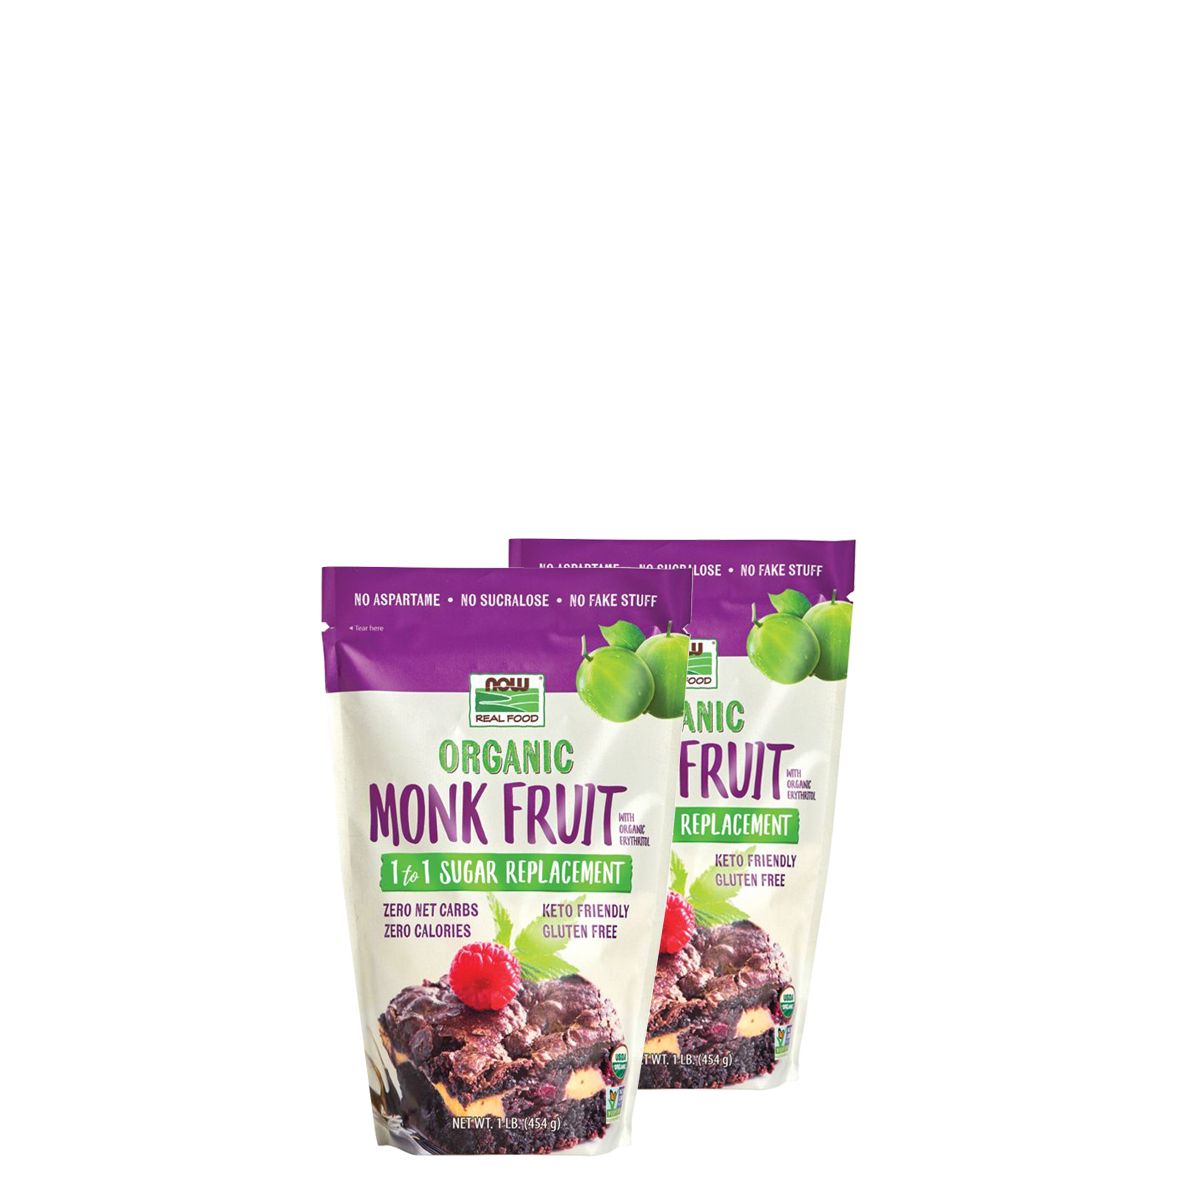 Bio monk fruit + eritrit édesítőszer keverék, Now Organic Monk Fruit with Erythritol, 2x454 g